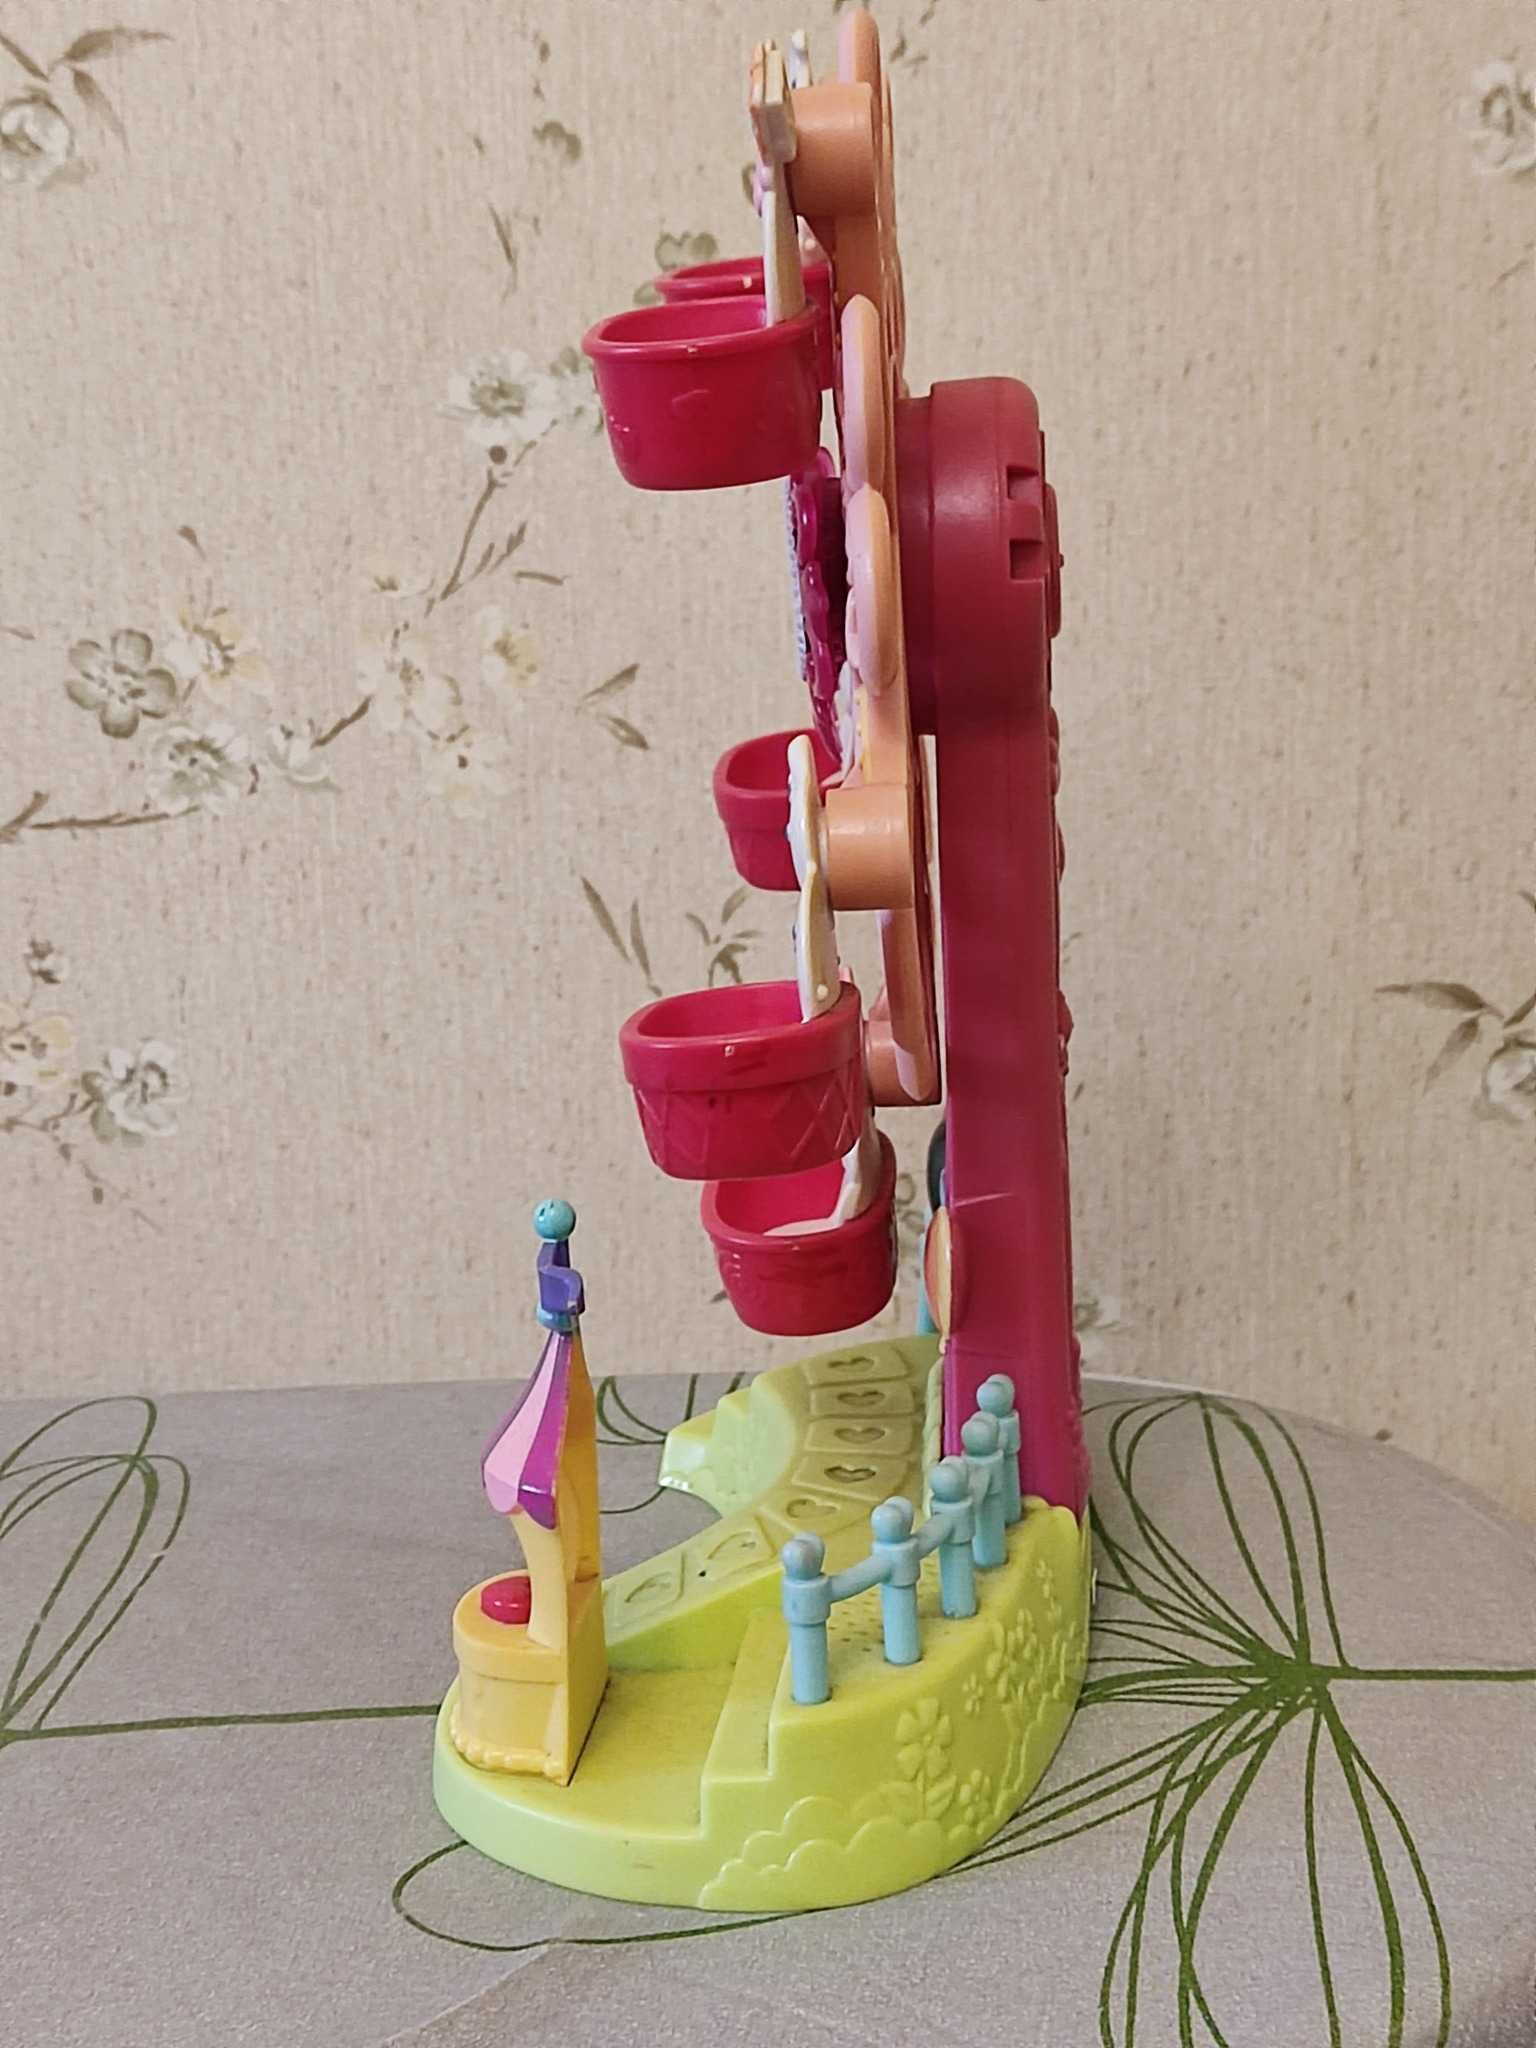 Детская музыкальная интерактивная игрушка колесо обозрения Ponyville